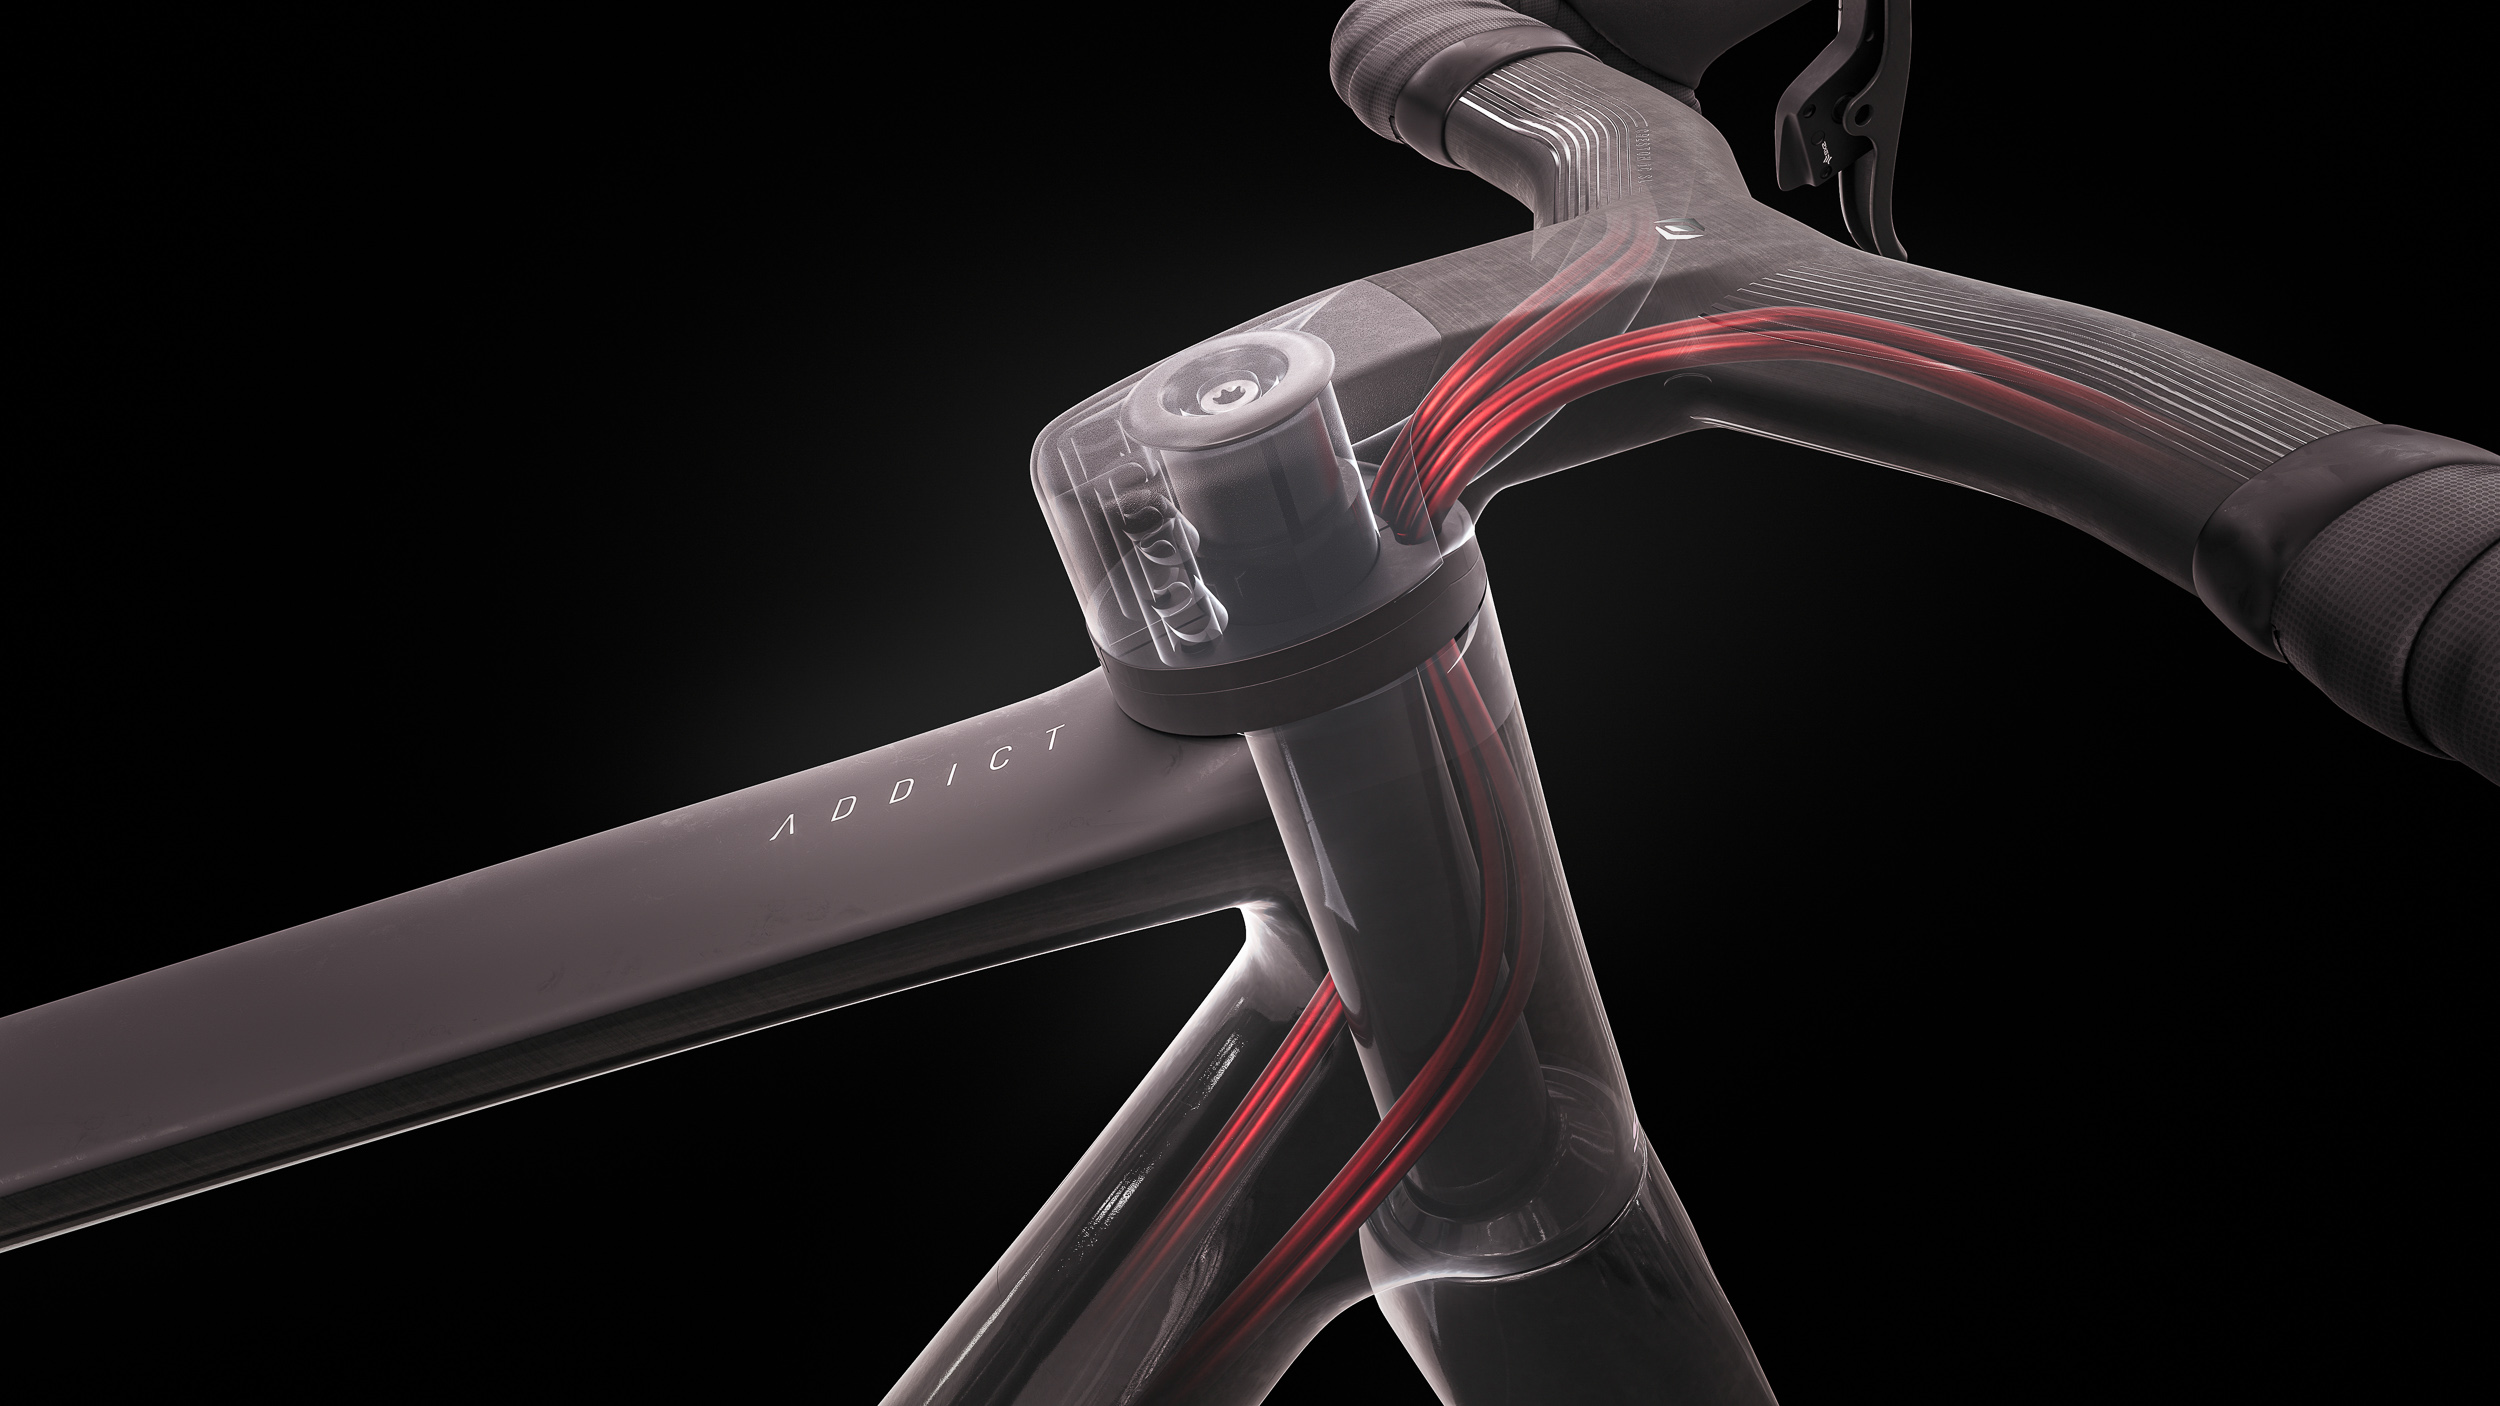 O eixo patenteado da forquilha de bicicleta "Eccentric" da Scott cria espaço para todos os cabos e conduítes